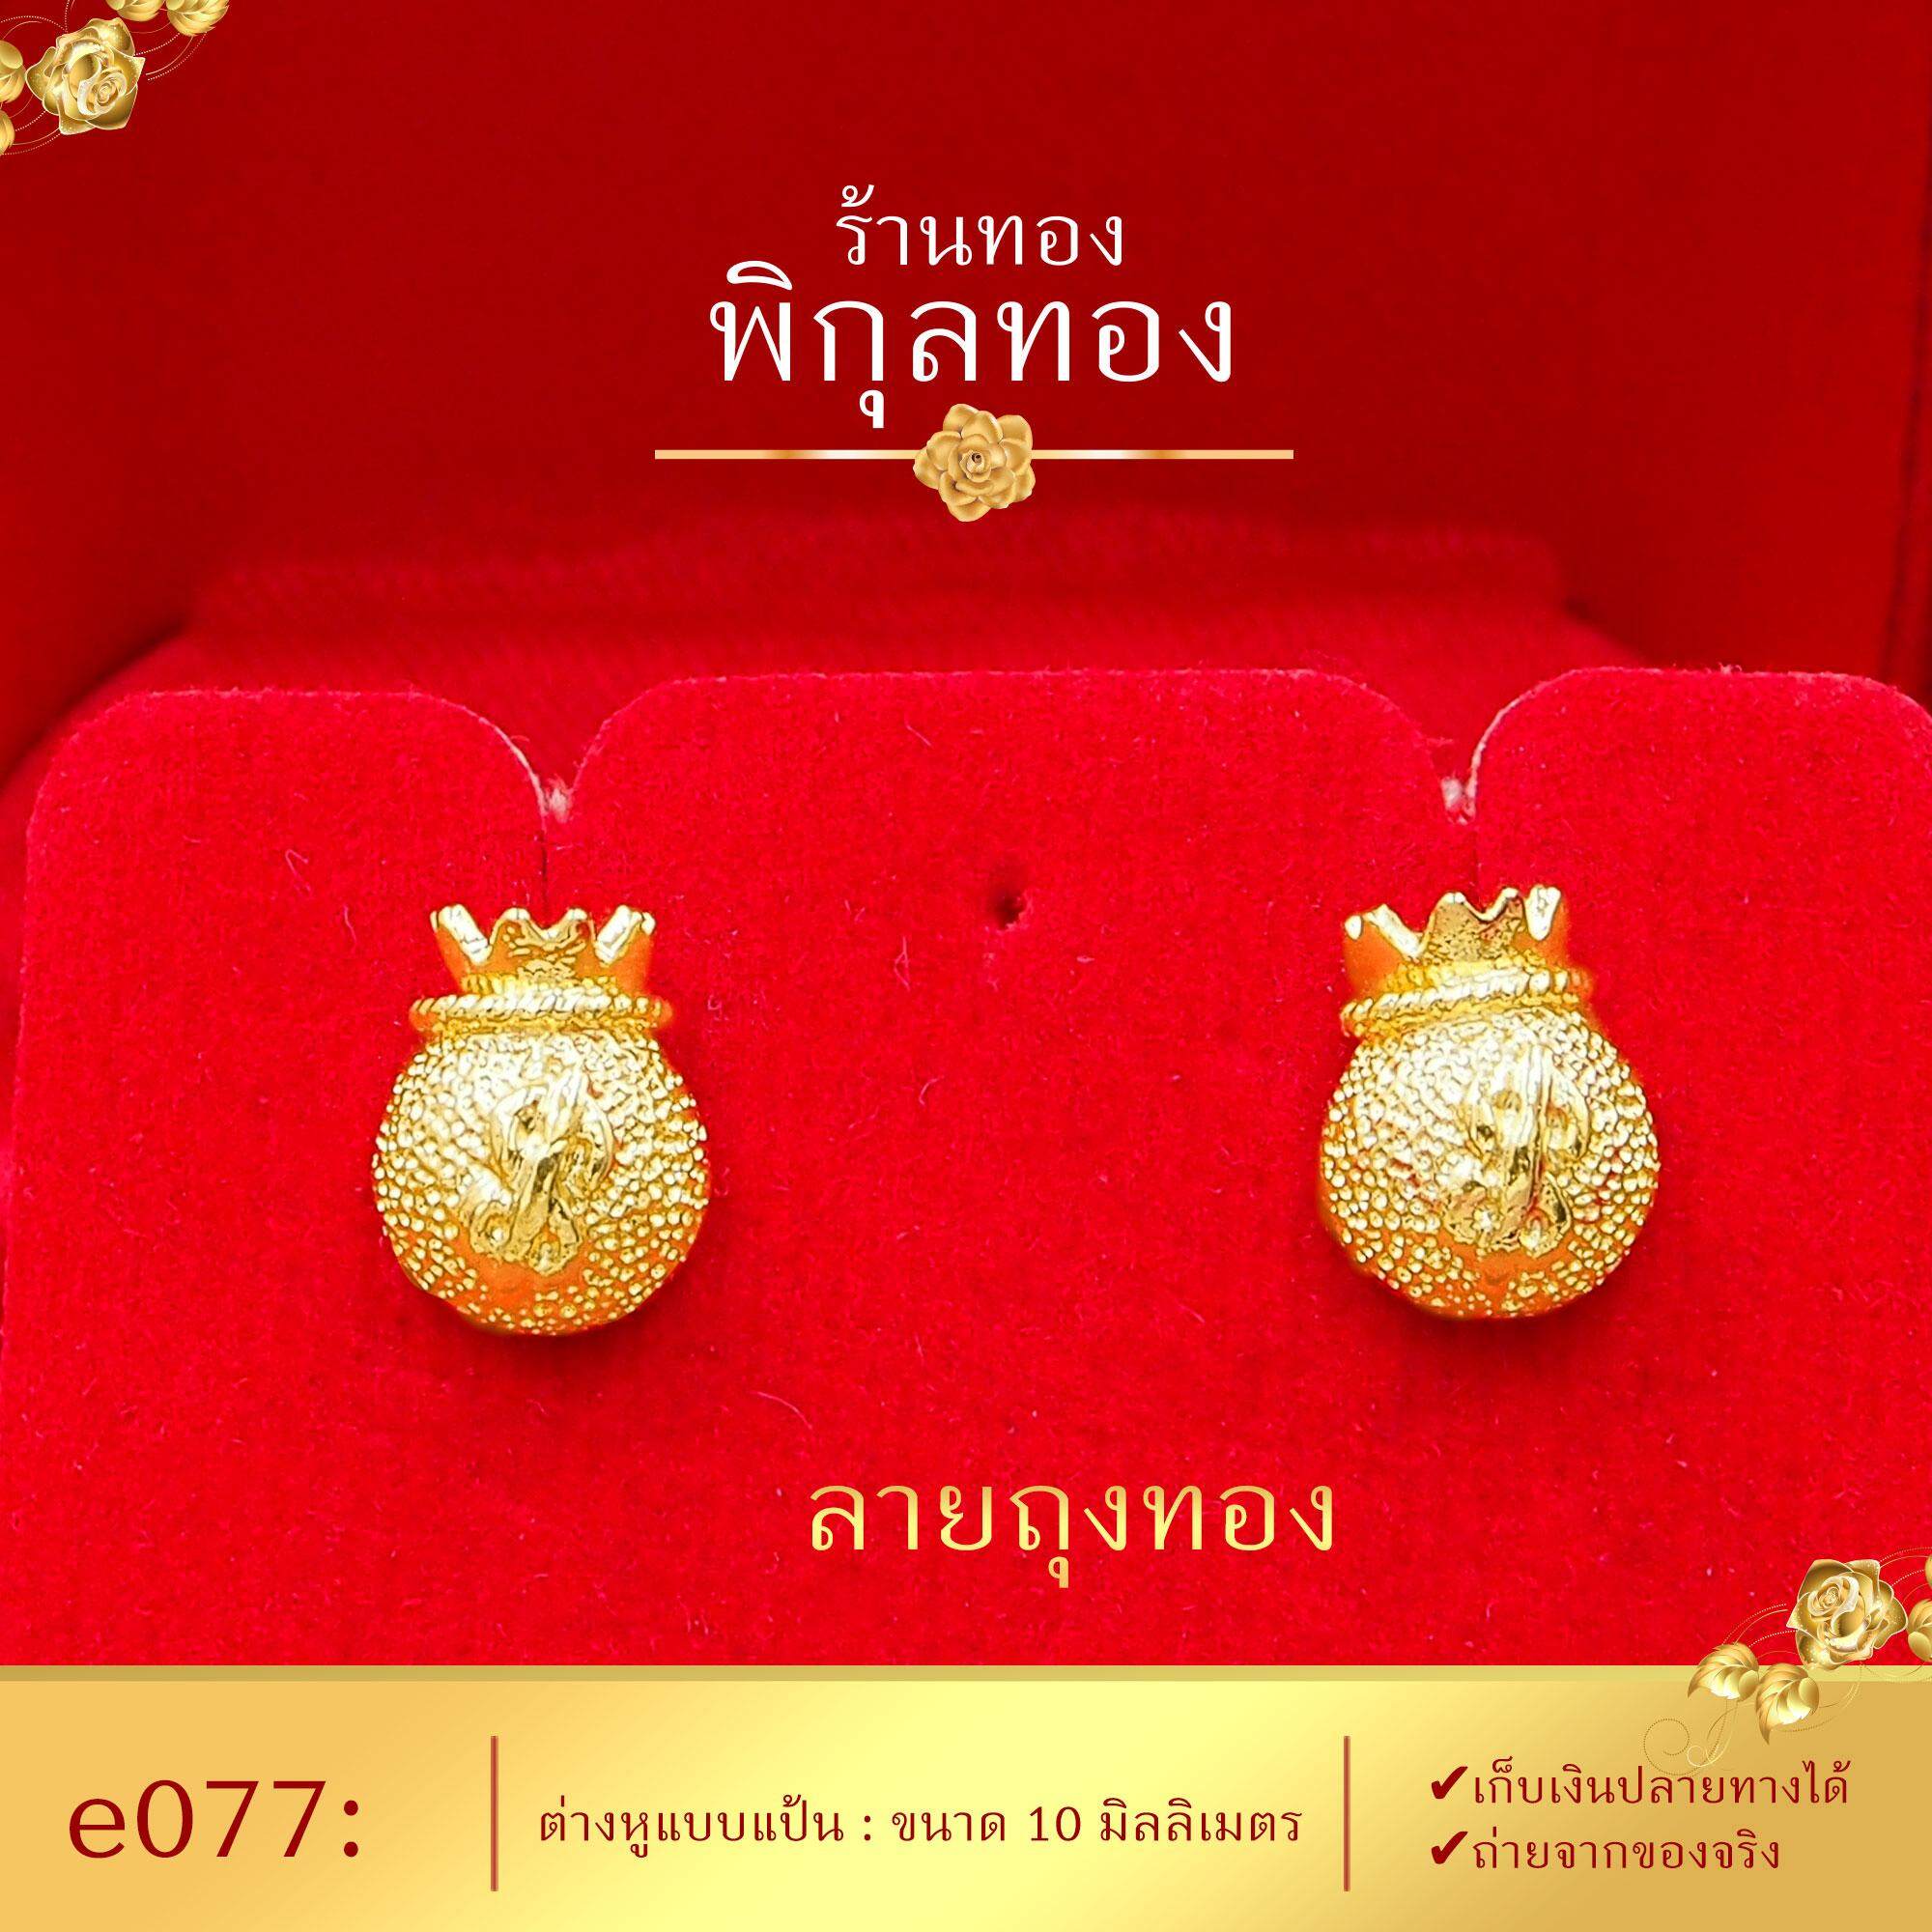 Pikunthong- รุ่น e077 ต่างหูทอง ถุงทอง (หุ้มทองแท้ เกรดพิเศษ) ต่างหู ต่างหูทอง ต่างหูหุ้มทองแท้ ตุ้มหูทอง ต่างหูทองหุ้ม ร้าน พิกุลทอง